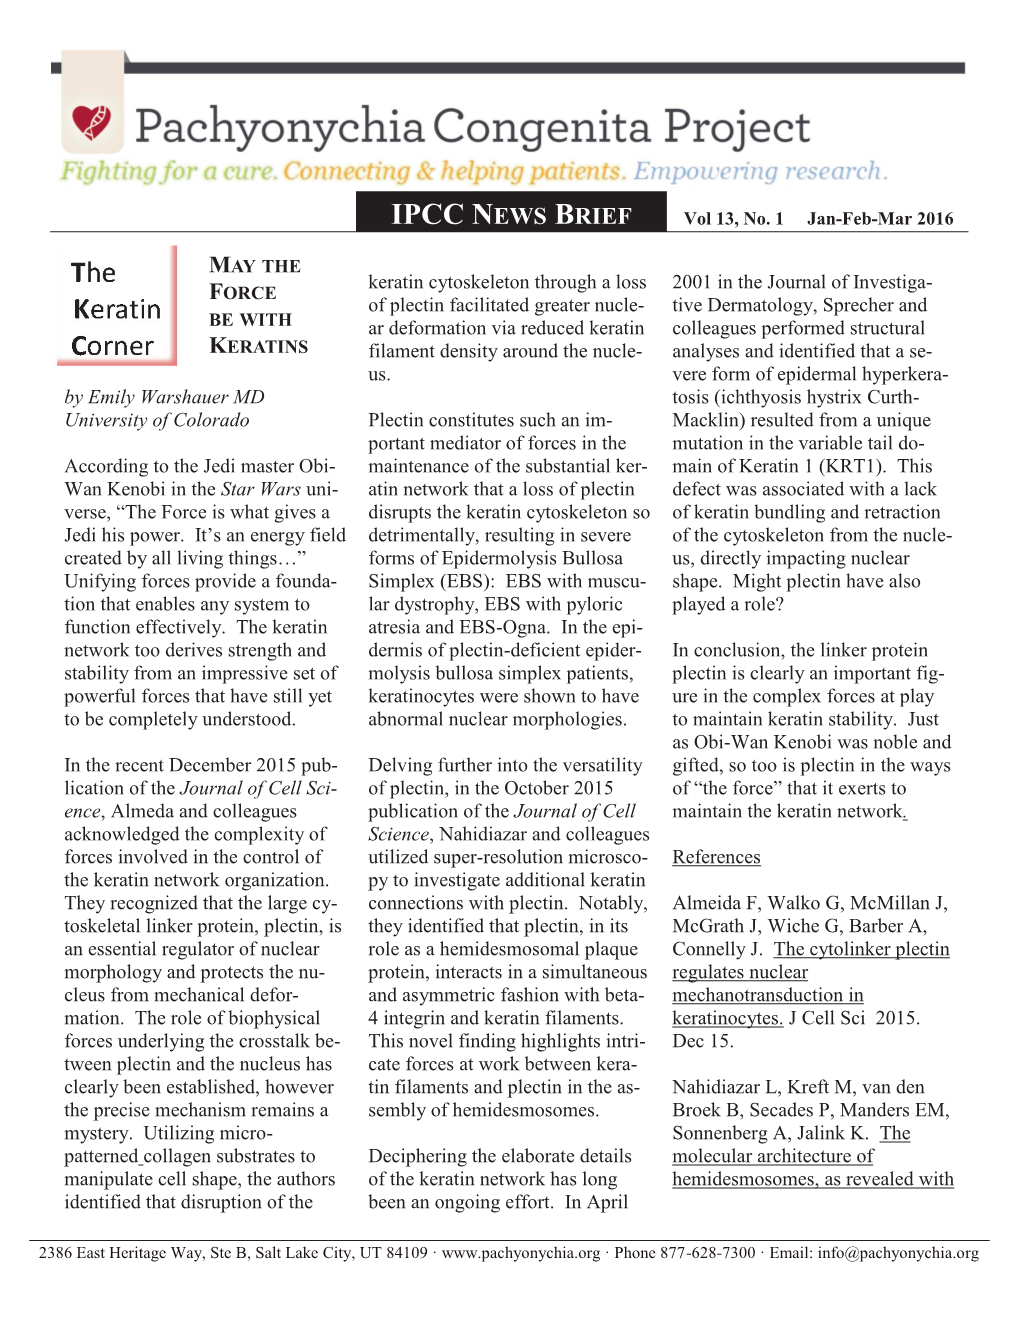 IPCC NEWS BRIEF Vol 13, No